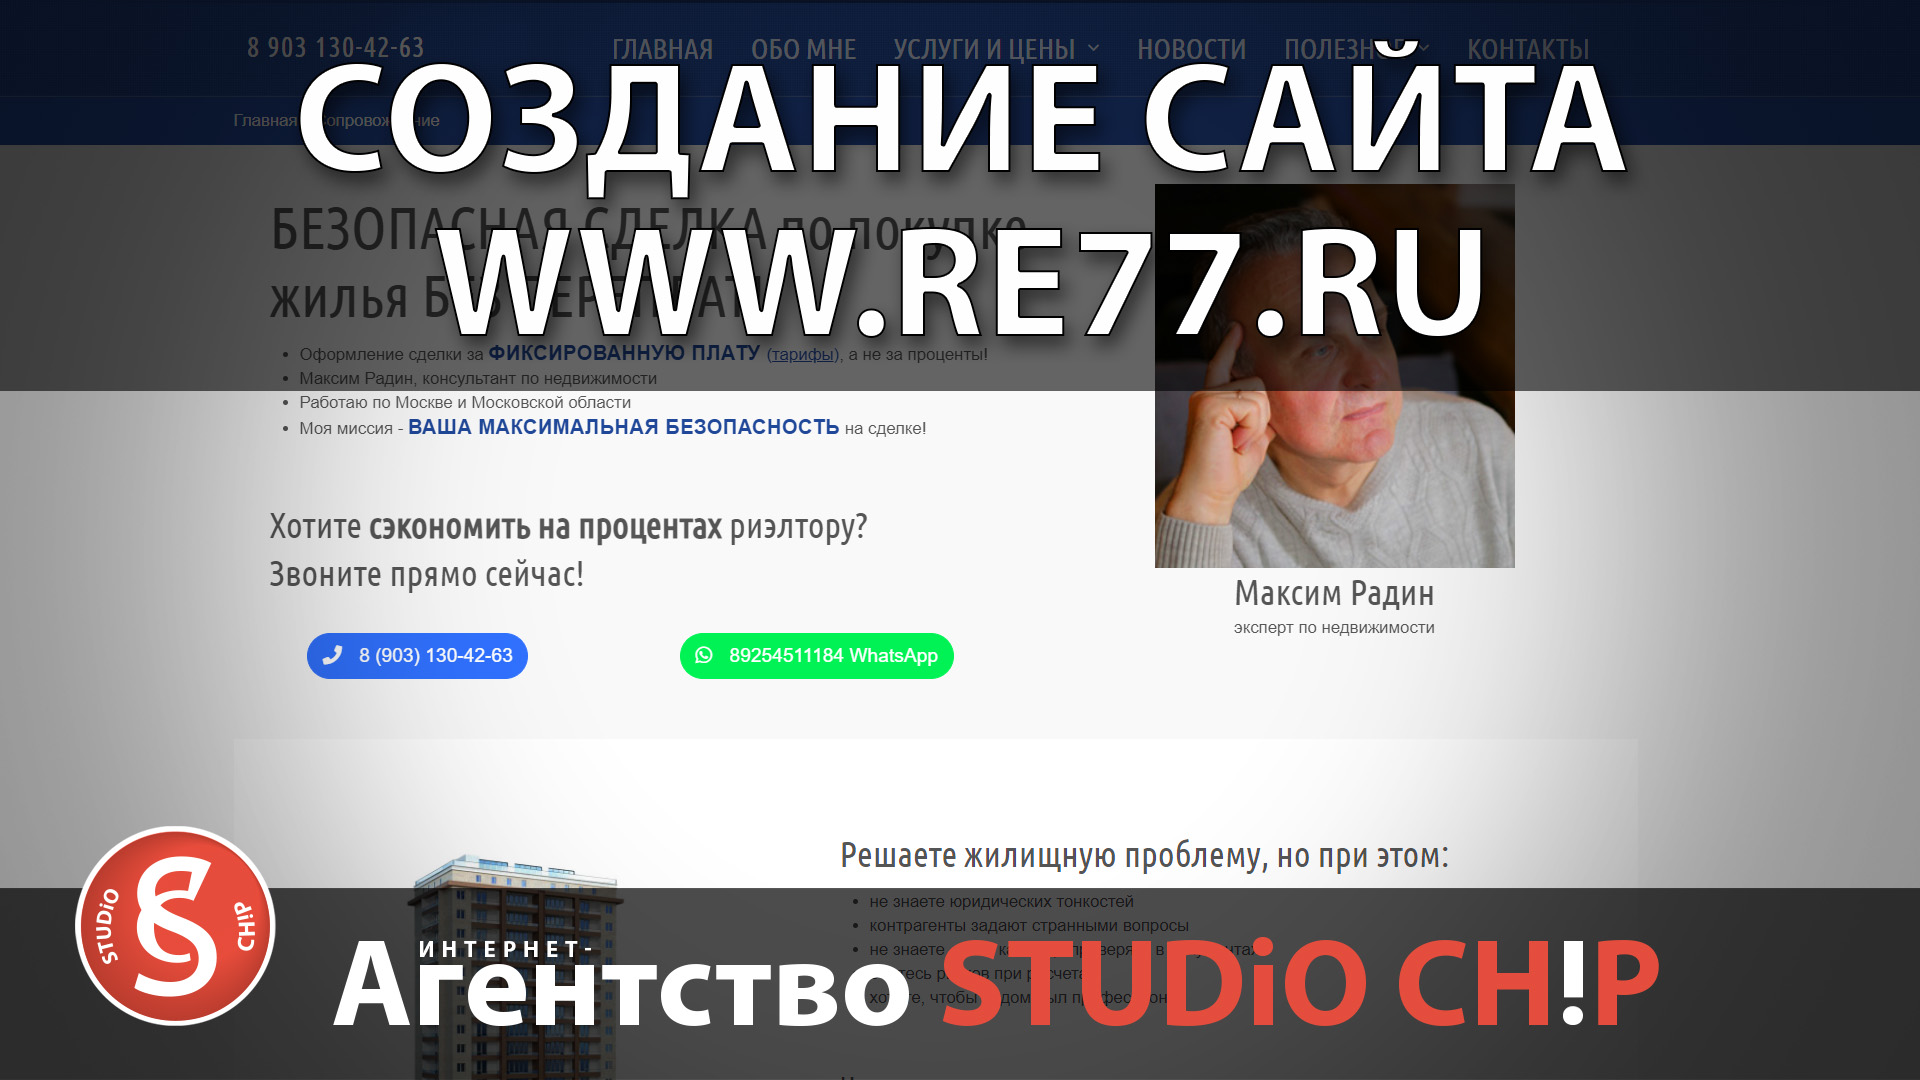 Создание сайтов в Москве под ключ Максим Радин - частный риэлтор!.